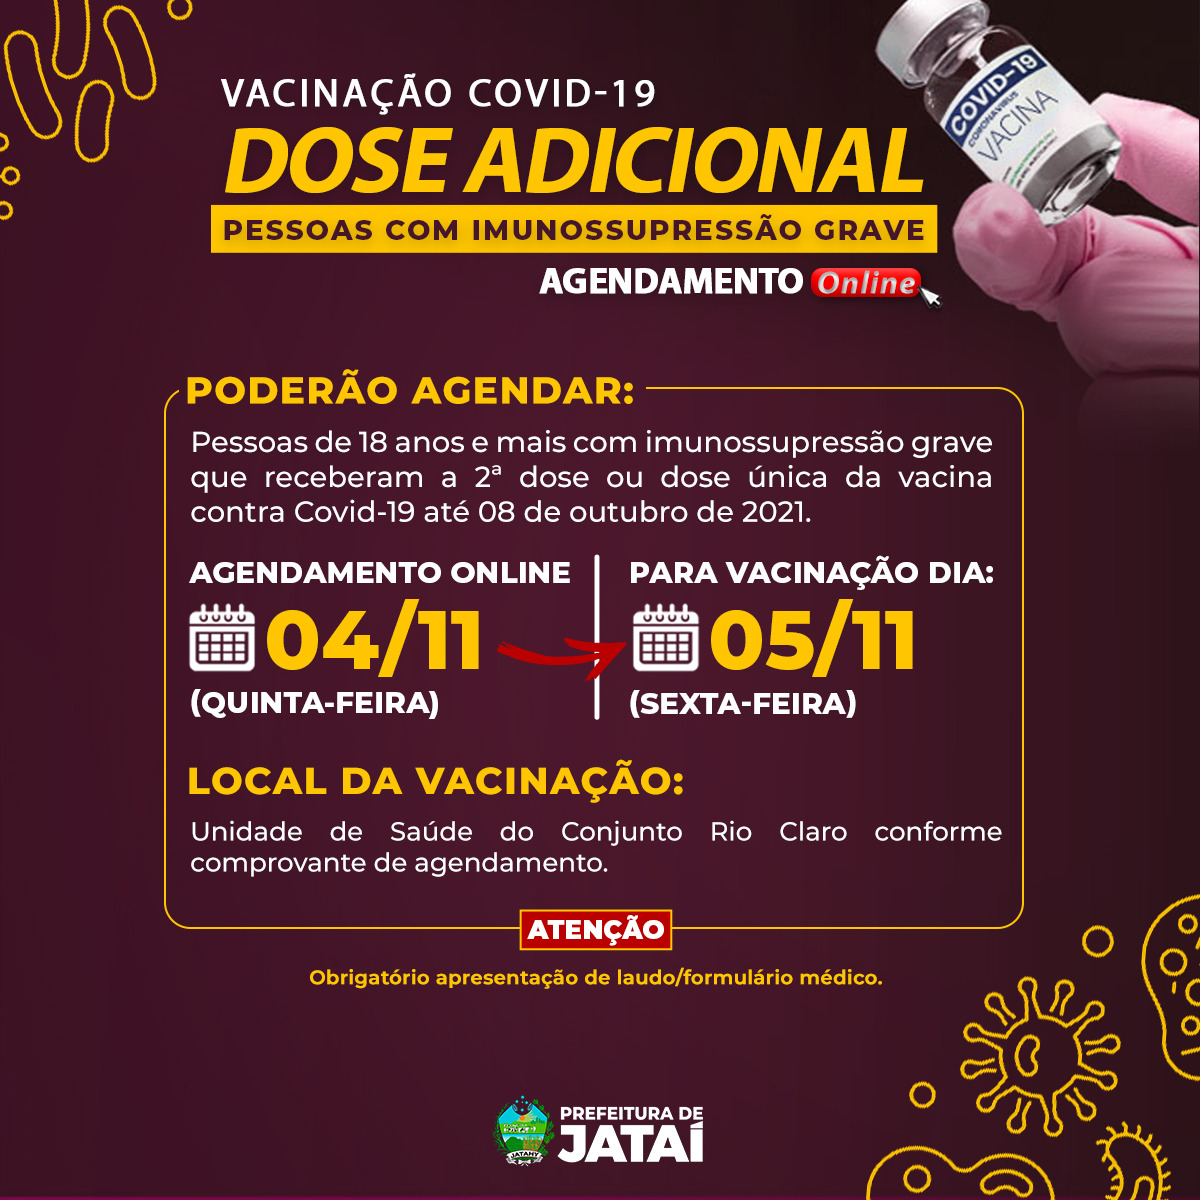 Diogo Rodrigues - Peças e acessórios agrícolas